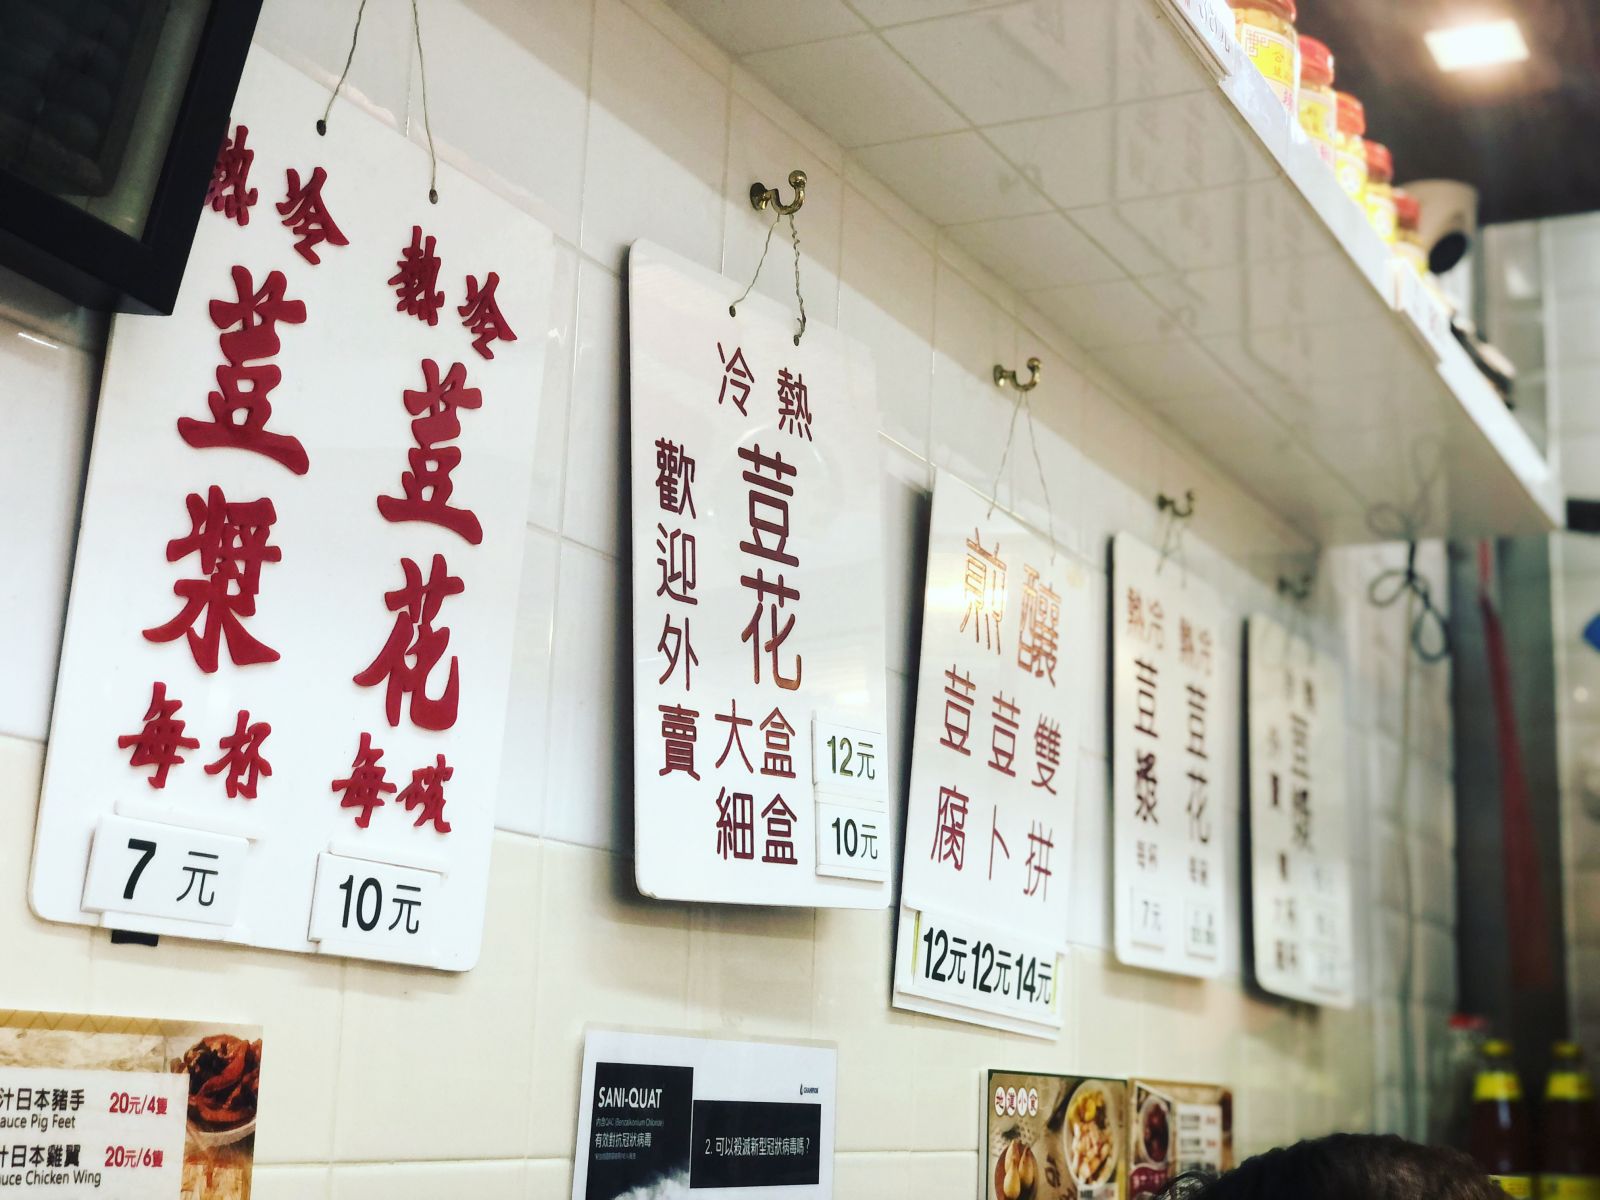 Traditional Hong-Kong-style menu